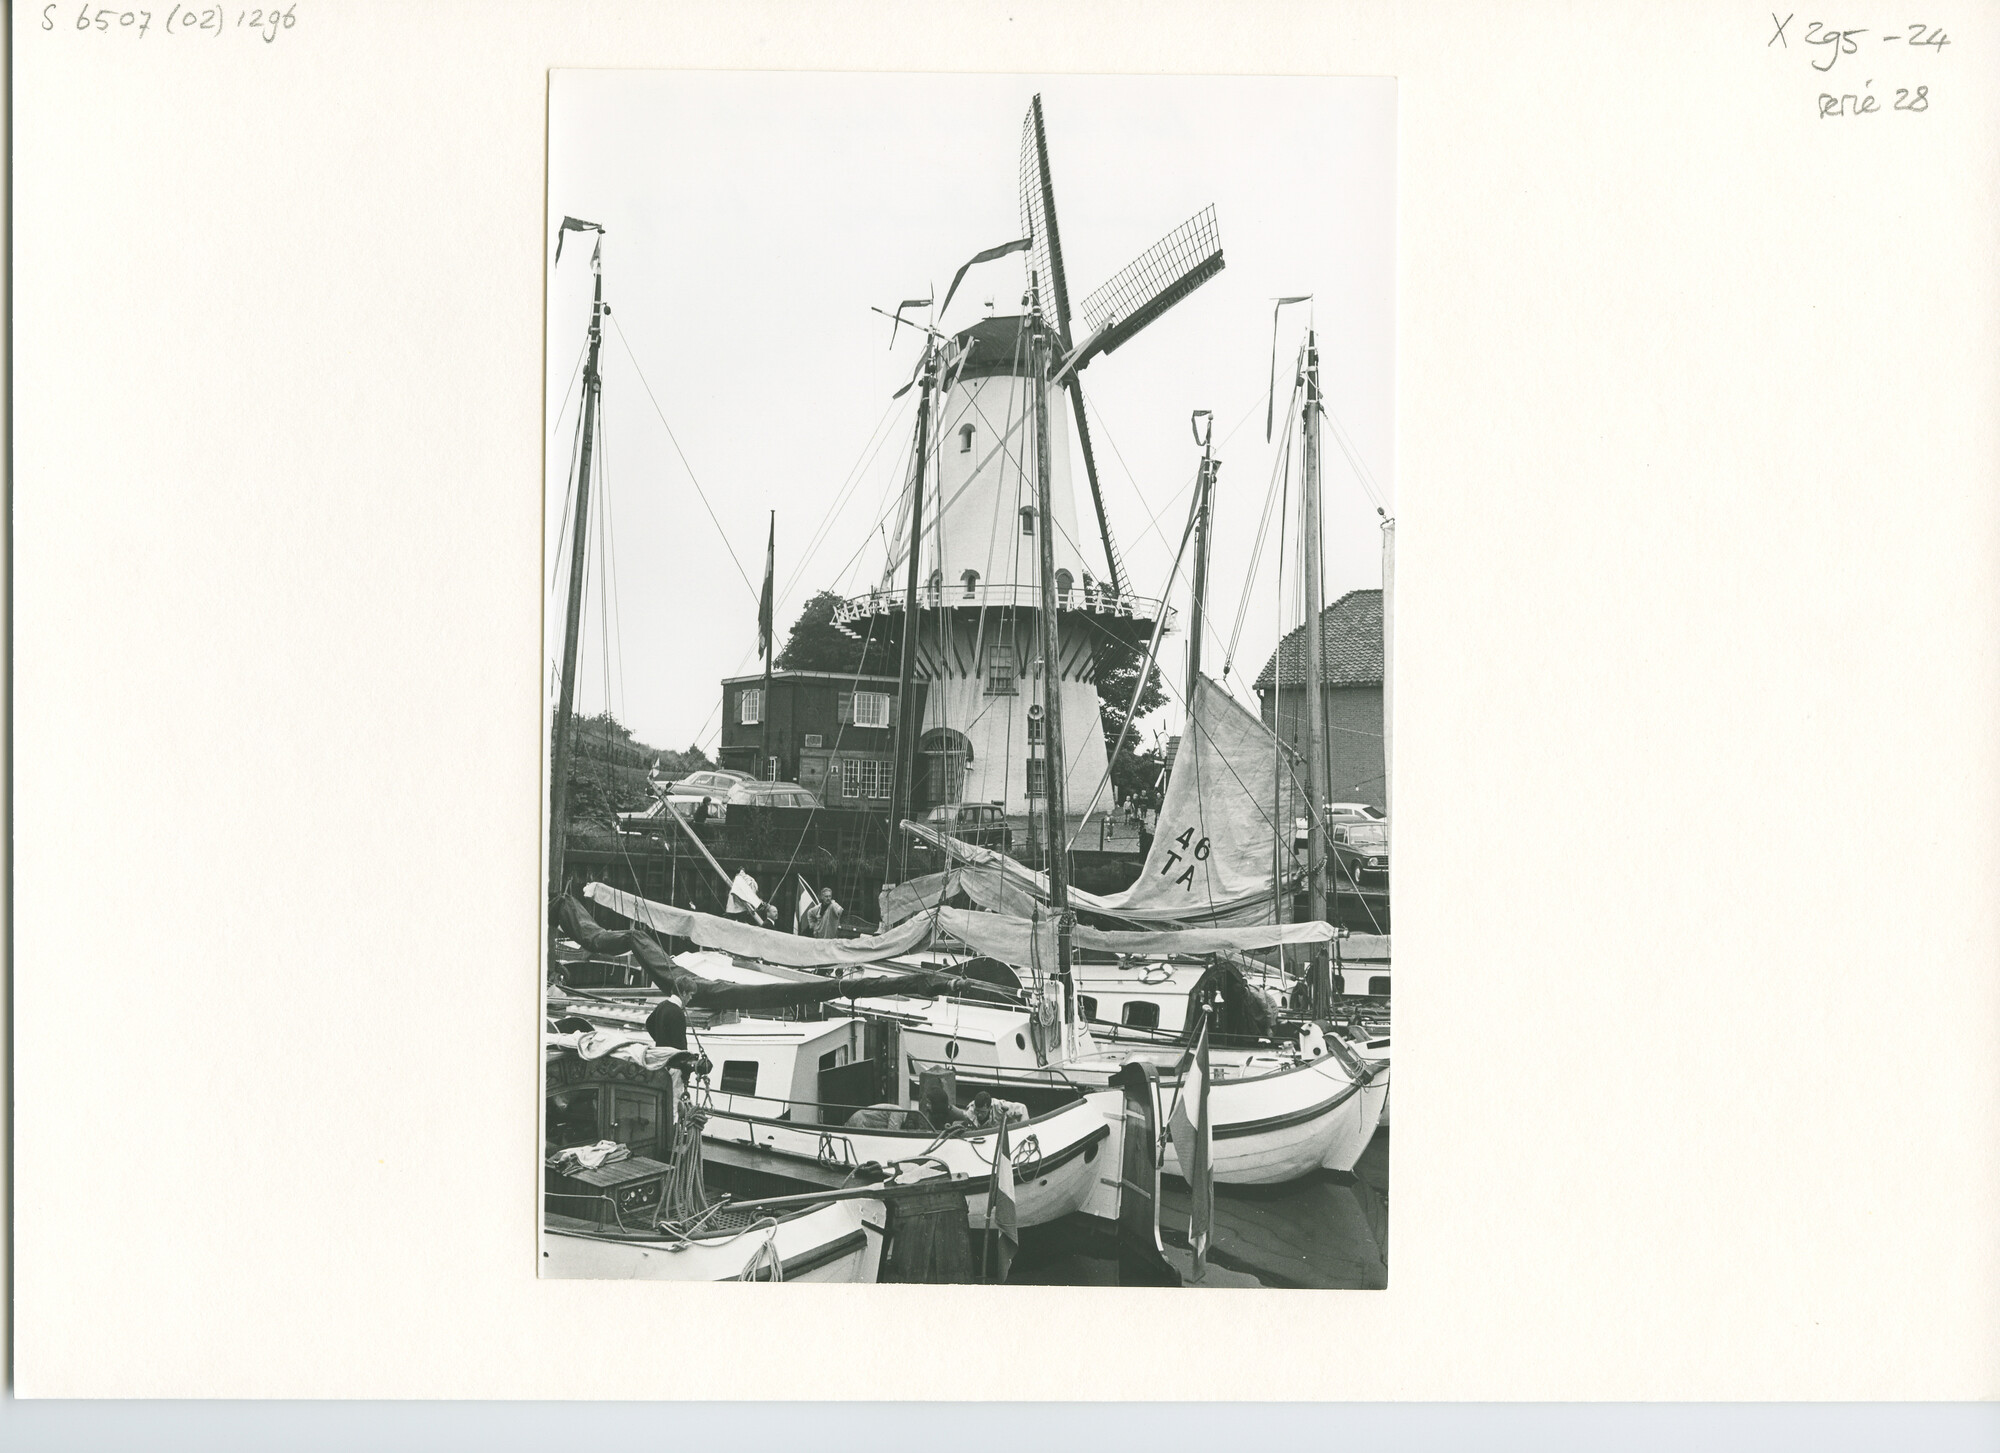 S.6507(02)1296.05; Zwart-wit foto van de reünie van ronde en platbodemjachten te Willemstad; foto